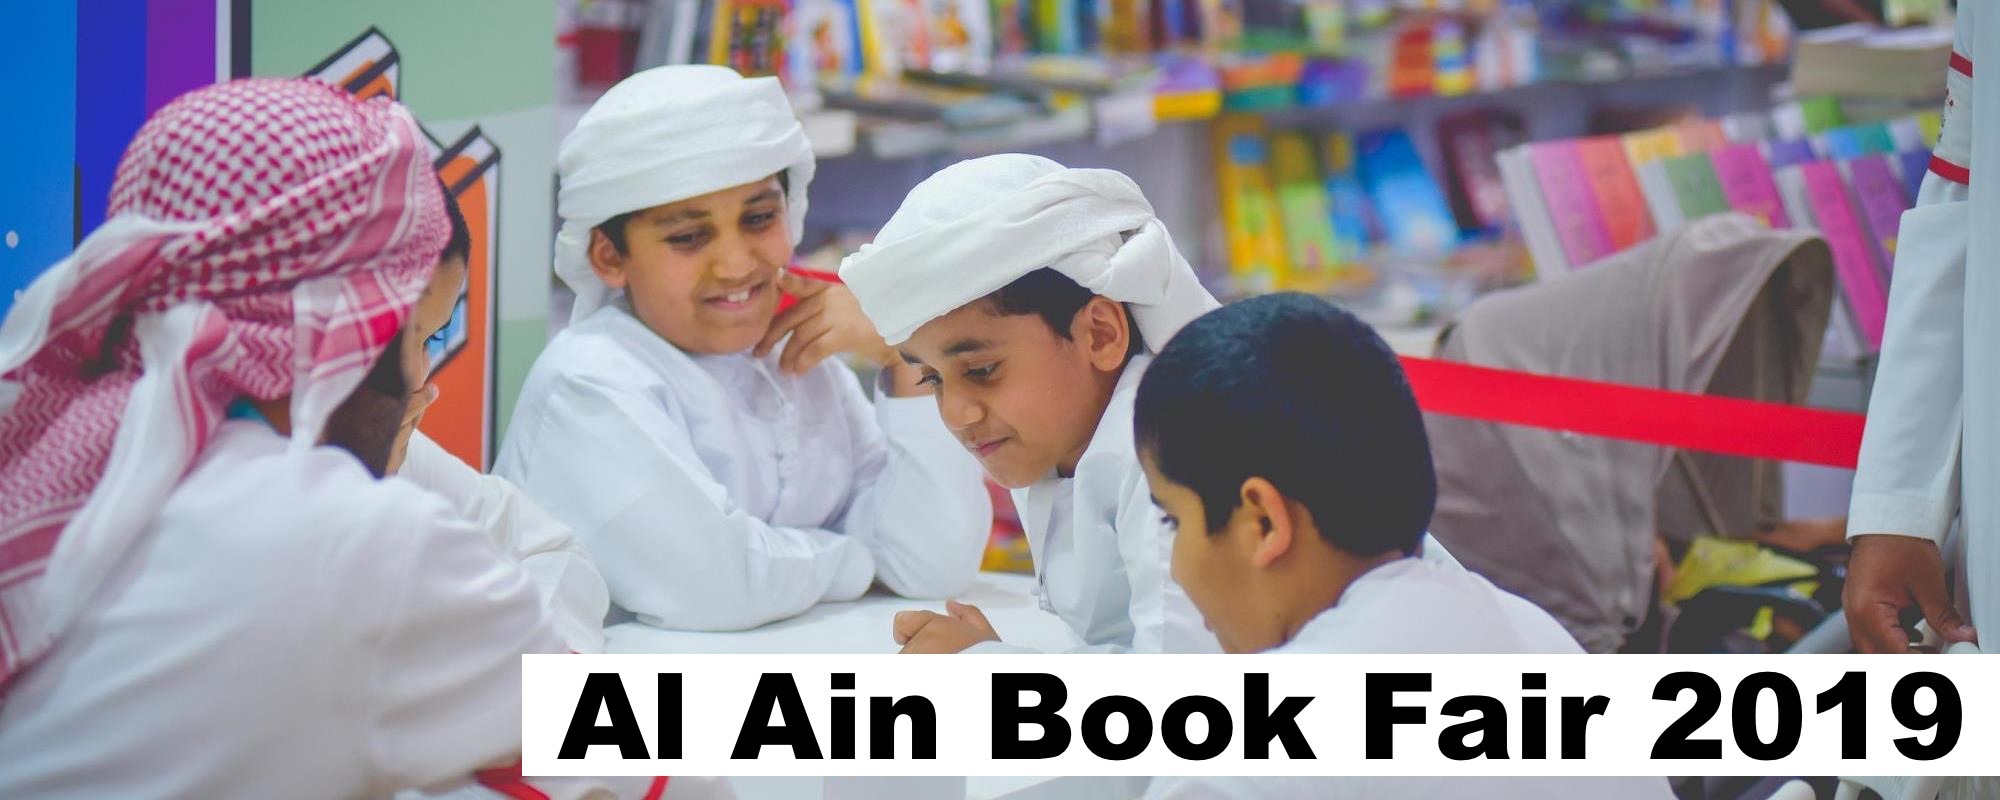 Al Ain Book Fair 2019 - Coming Soon in UAE